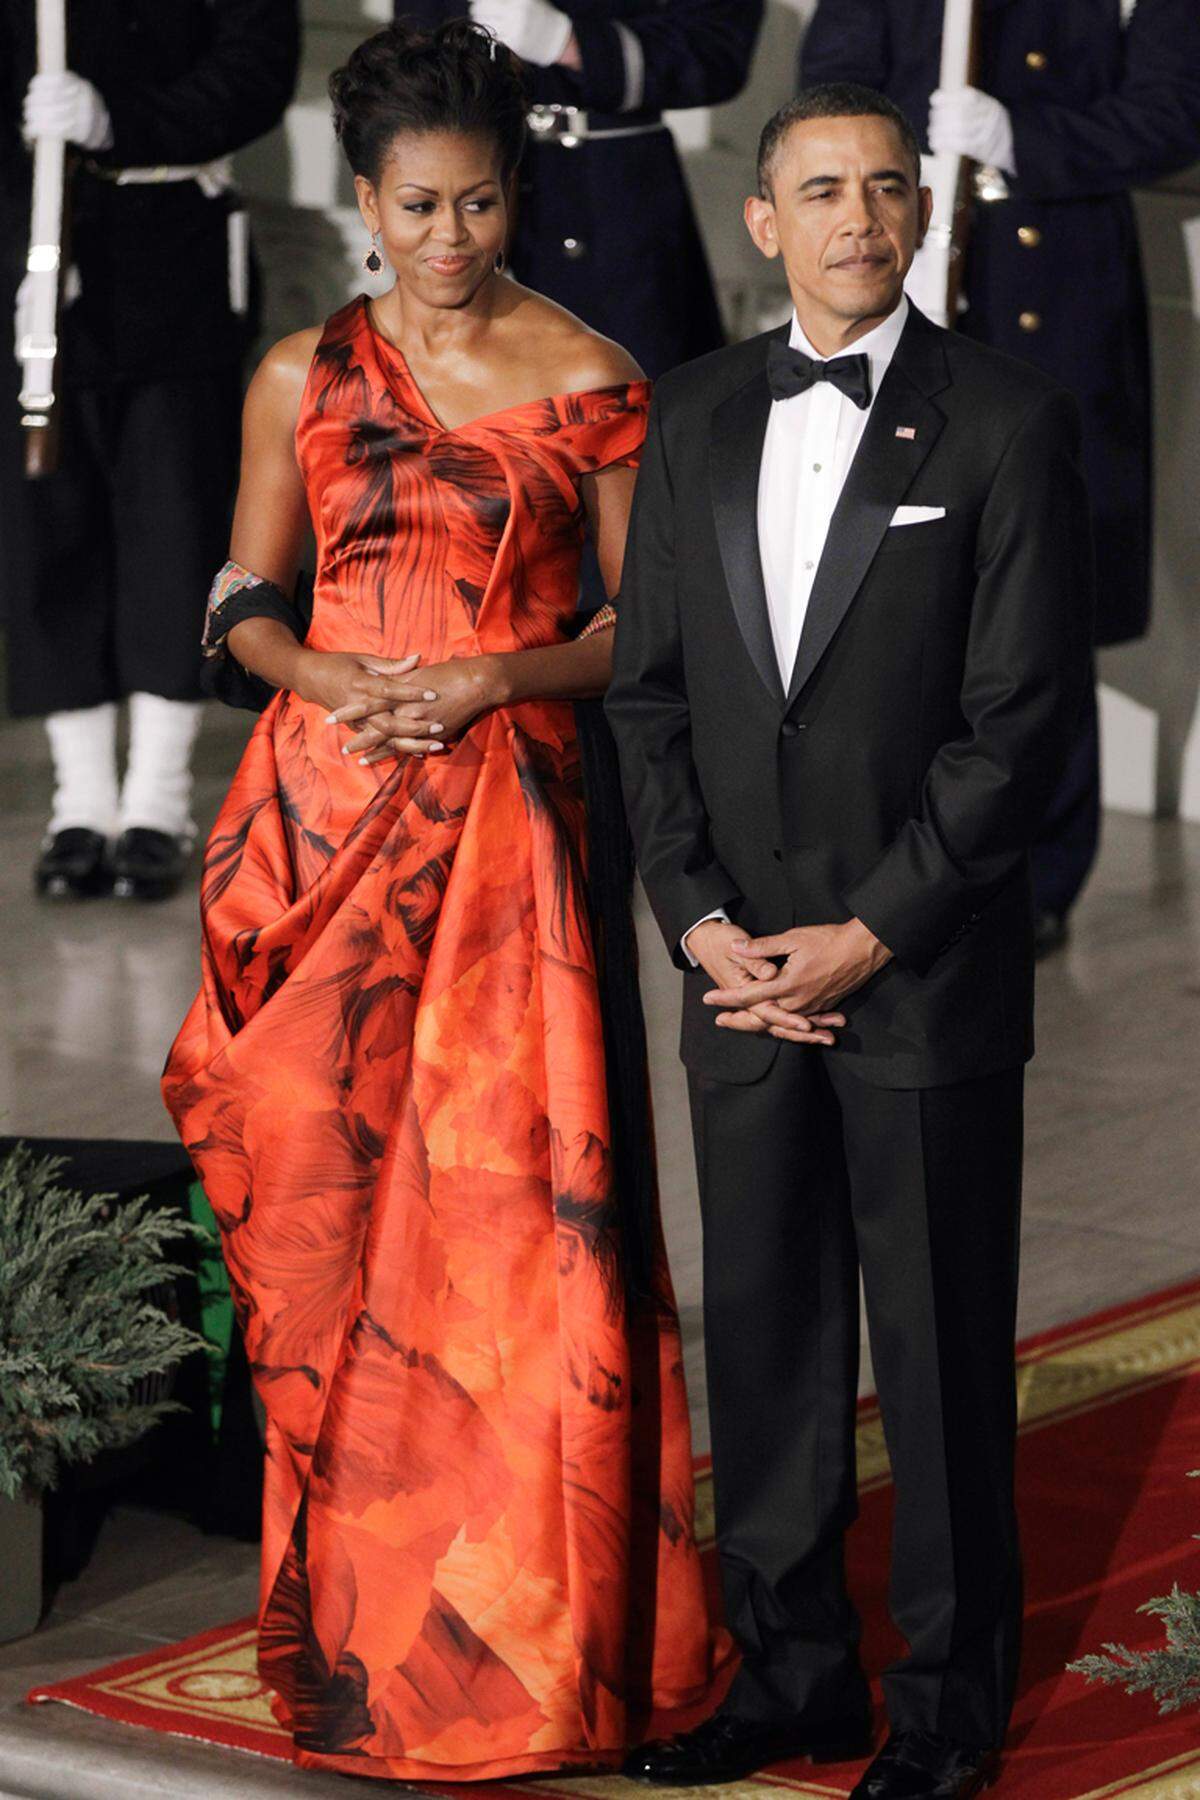 Für die britische "Daily Mail" war es das "Outfit des Jahres 2011". Michelle Obama in einem roten Abendkleid von Sarah Burton bei einem Staatsbankett in China.